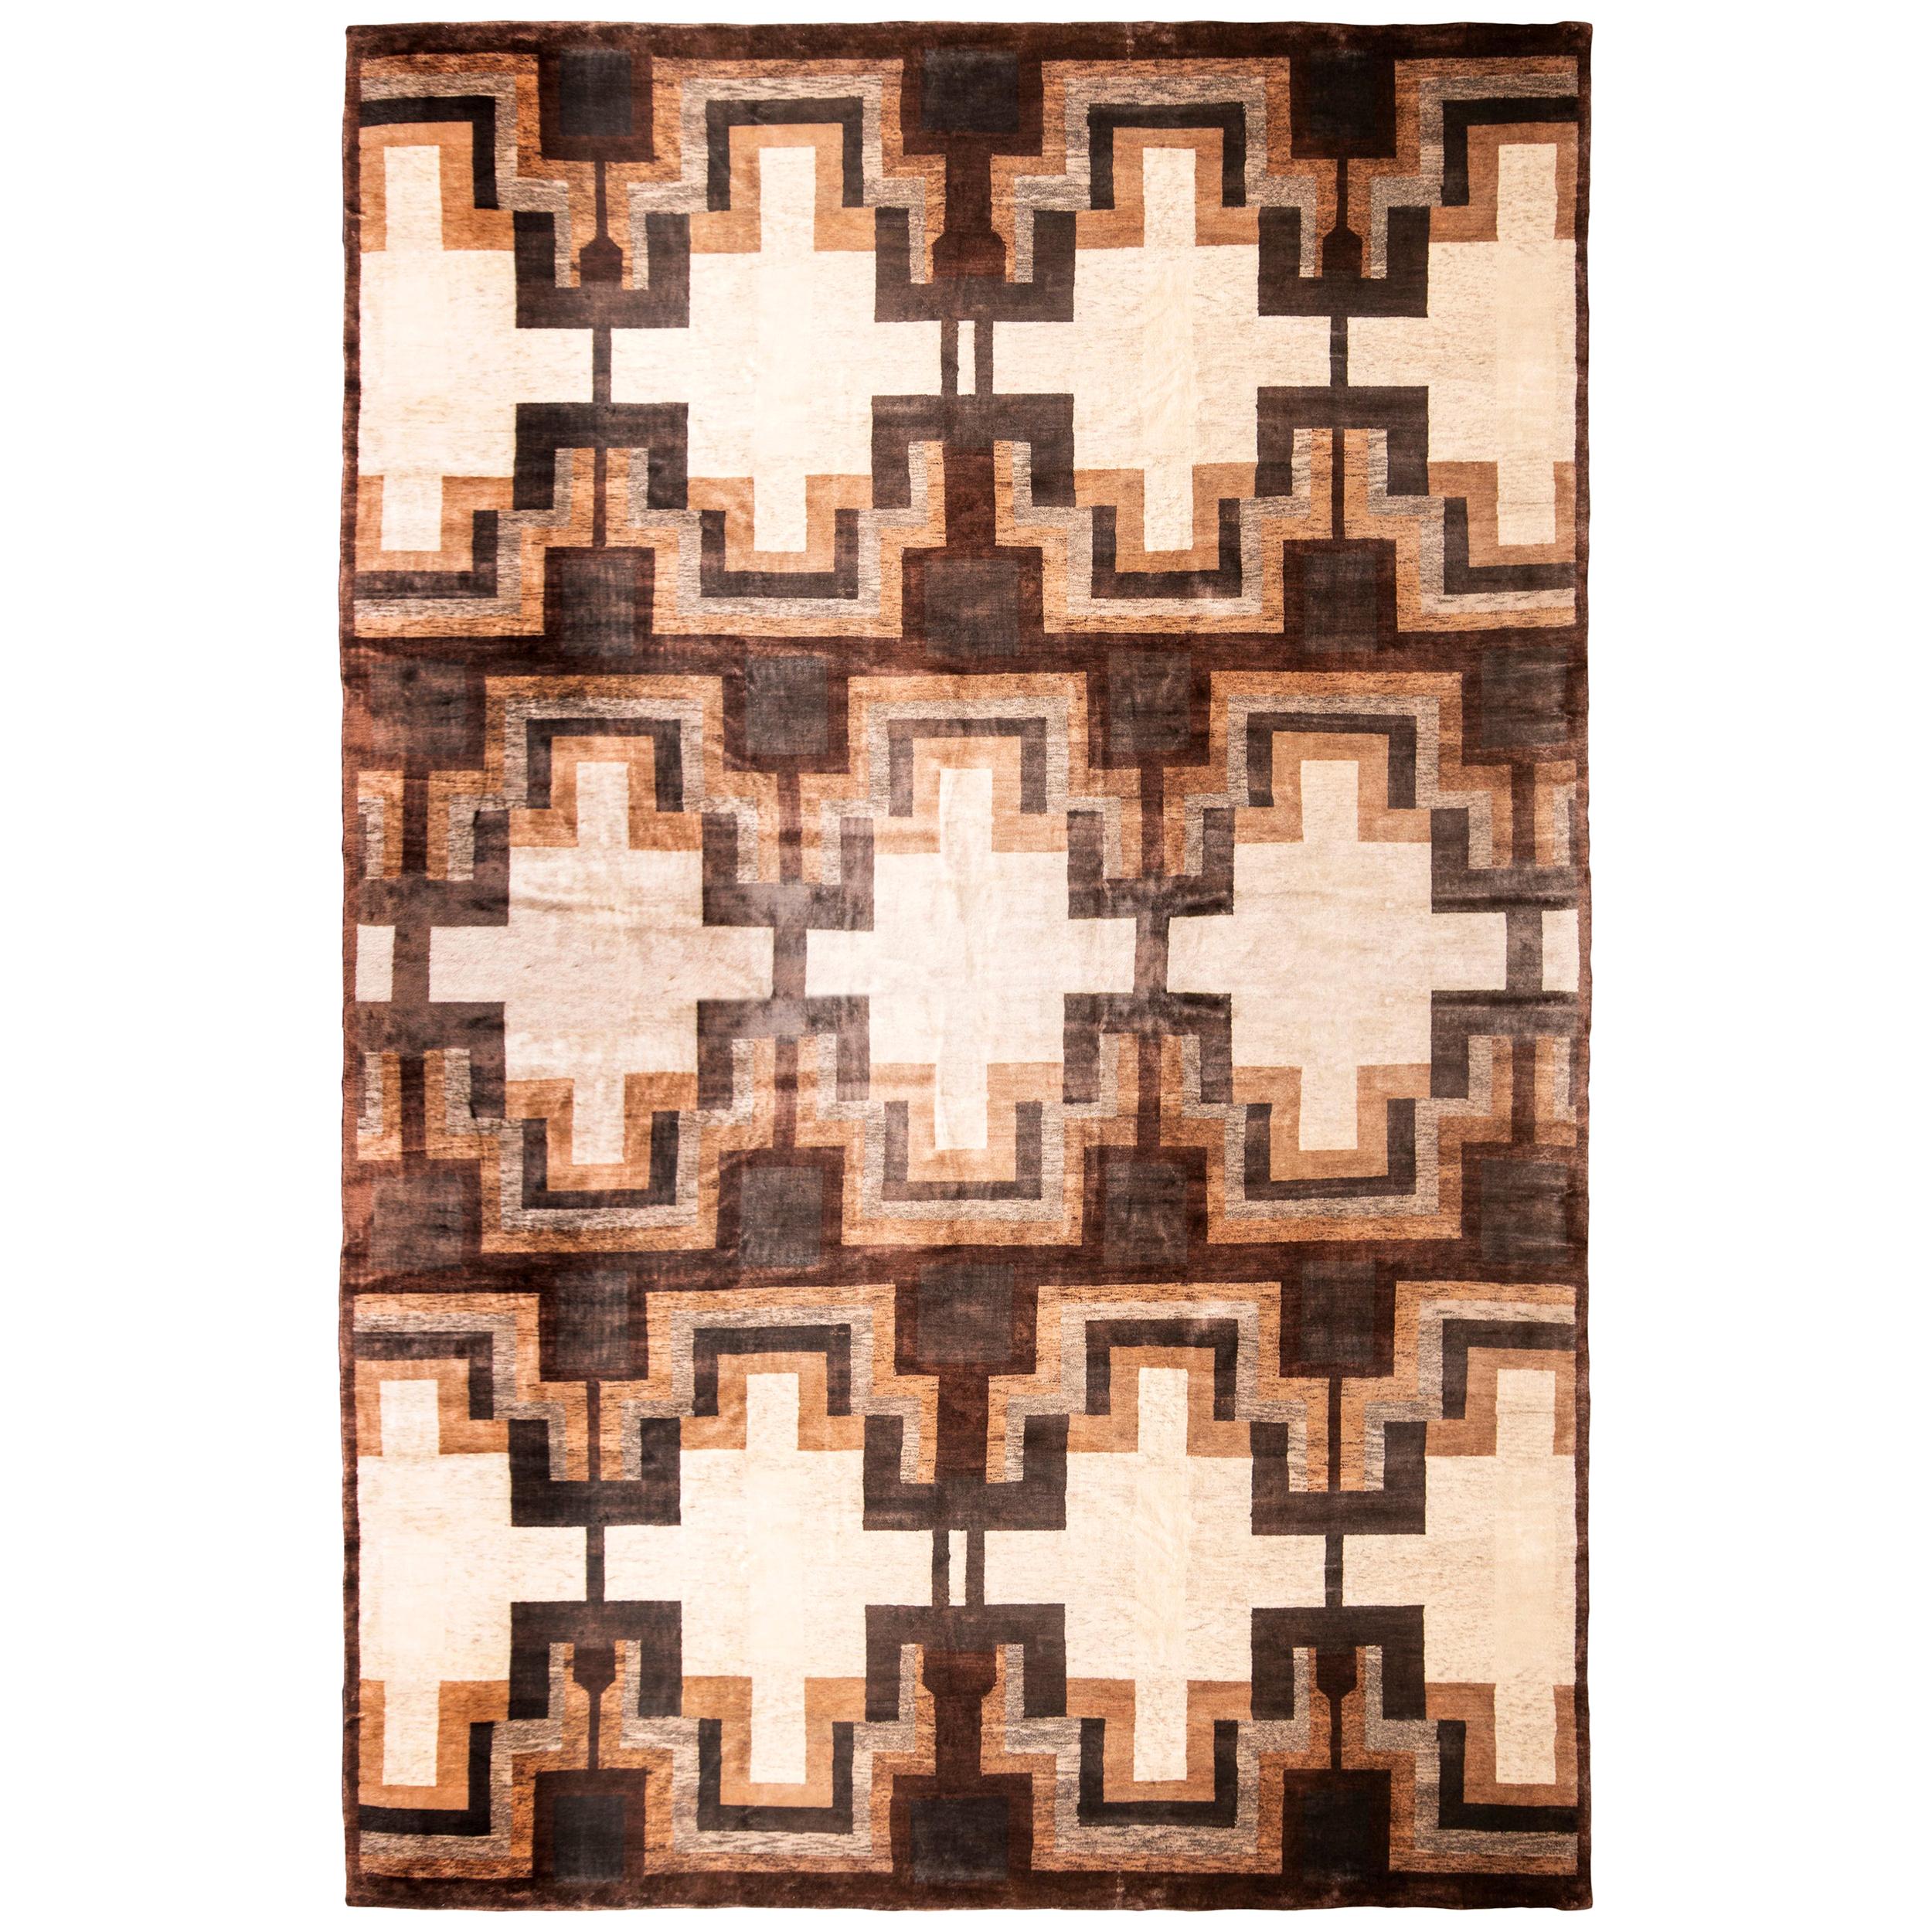 Rug & Kilim’s Art Deco Style Rug, Beige Brown Midcentury Geometric Pattern